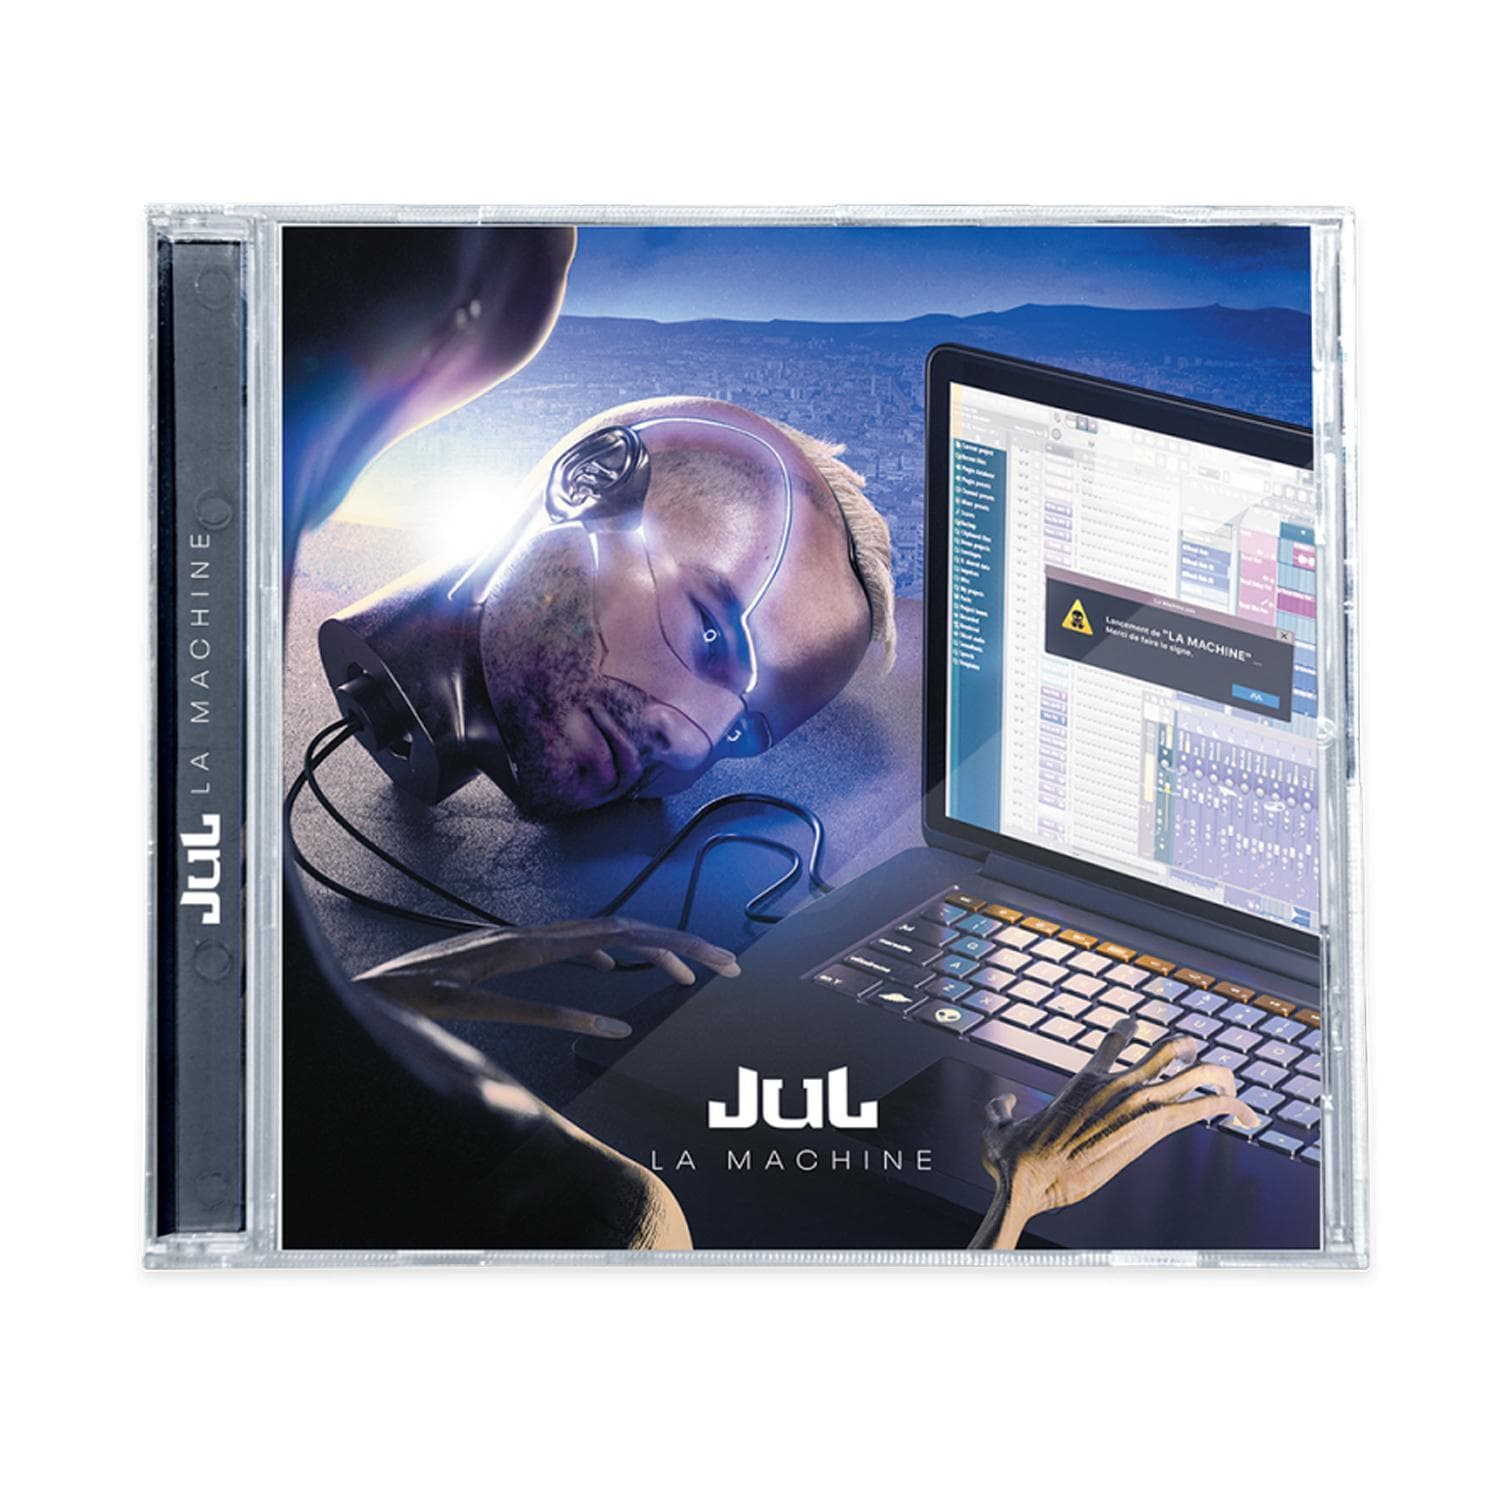 Jul - La Machine DOUBLE ALBUM - 11,99 € D&P Shop